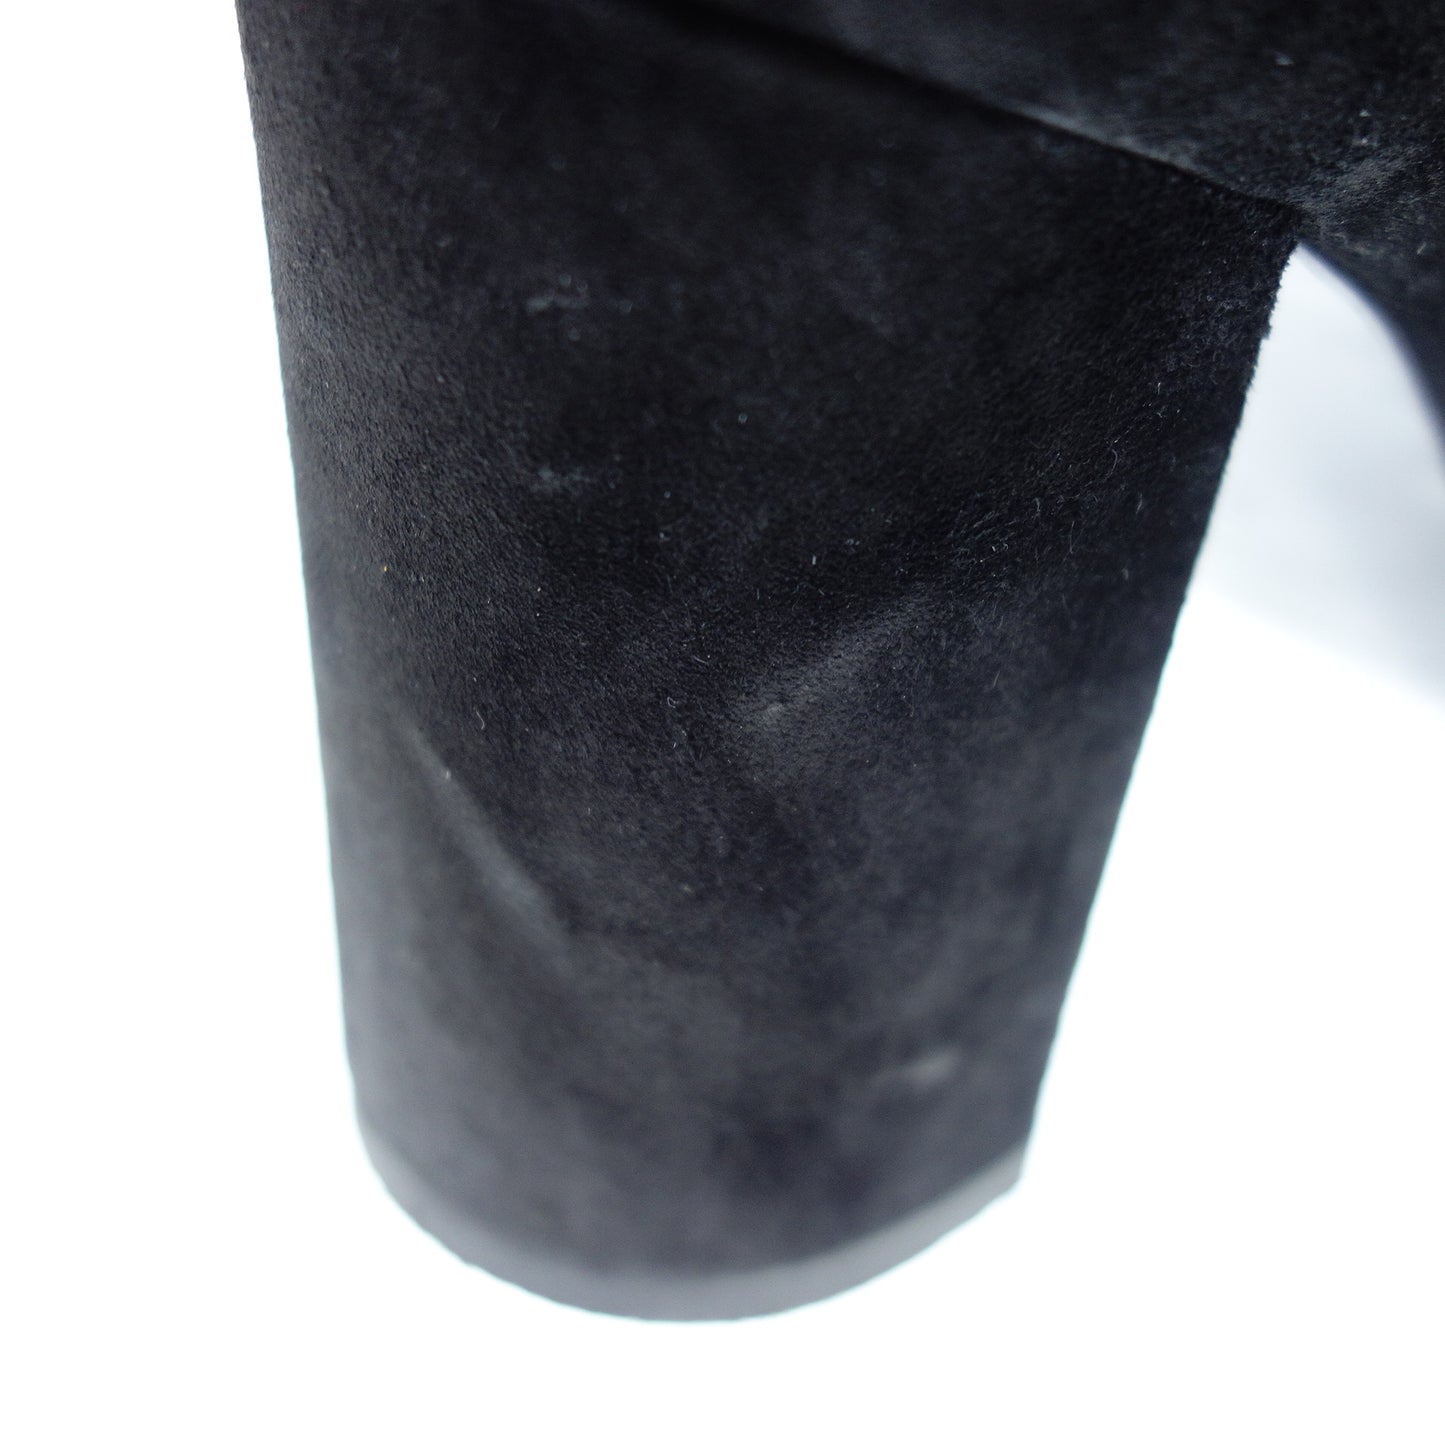 Used◆Saint Laurent Paris Suede Boots Side Strap Women's Size 37 Black Series Saint Laurent PARIS [AFC35] 